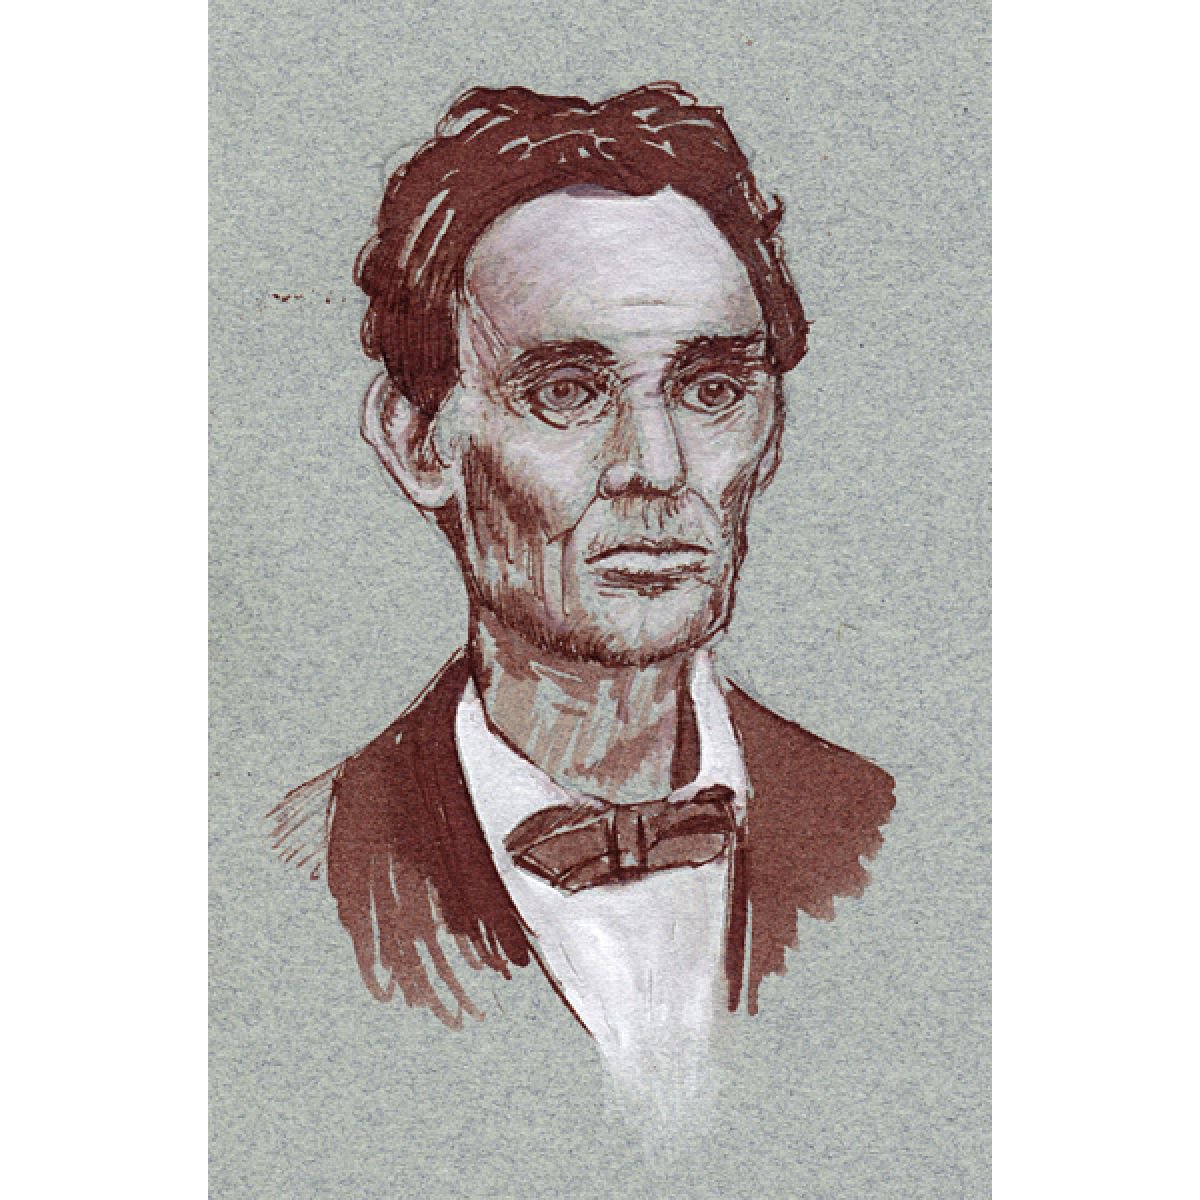 Abe Lincoln by John Fleck